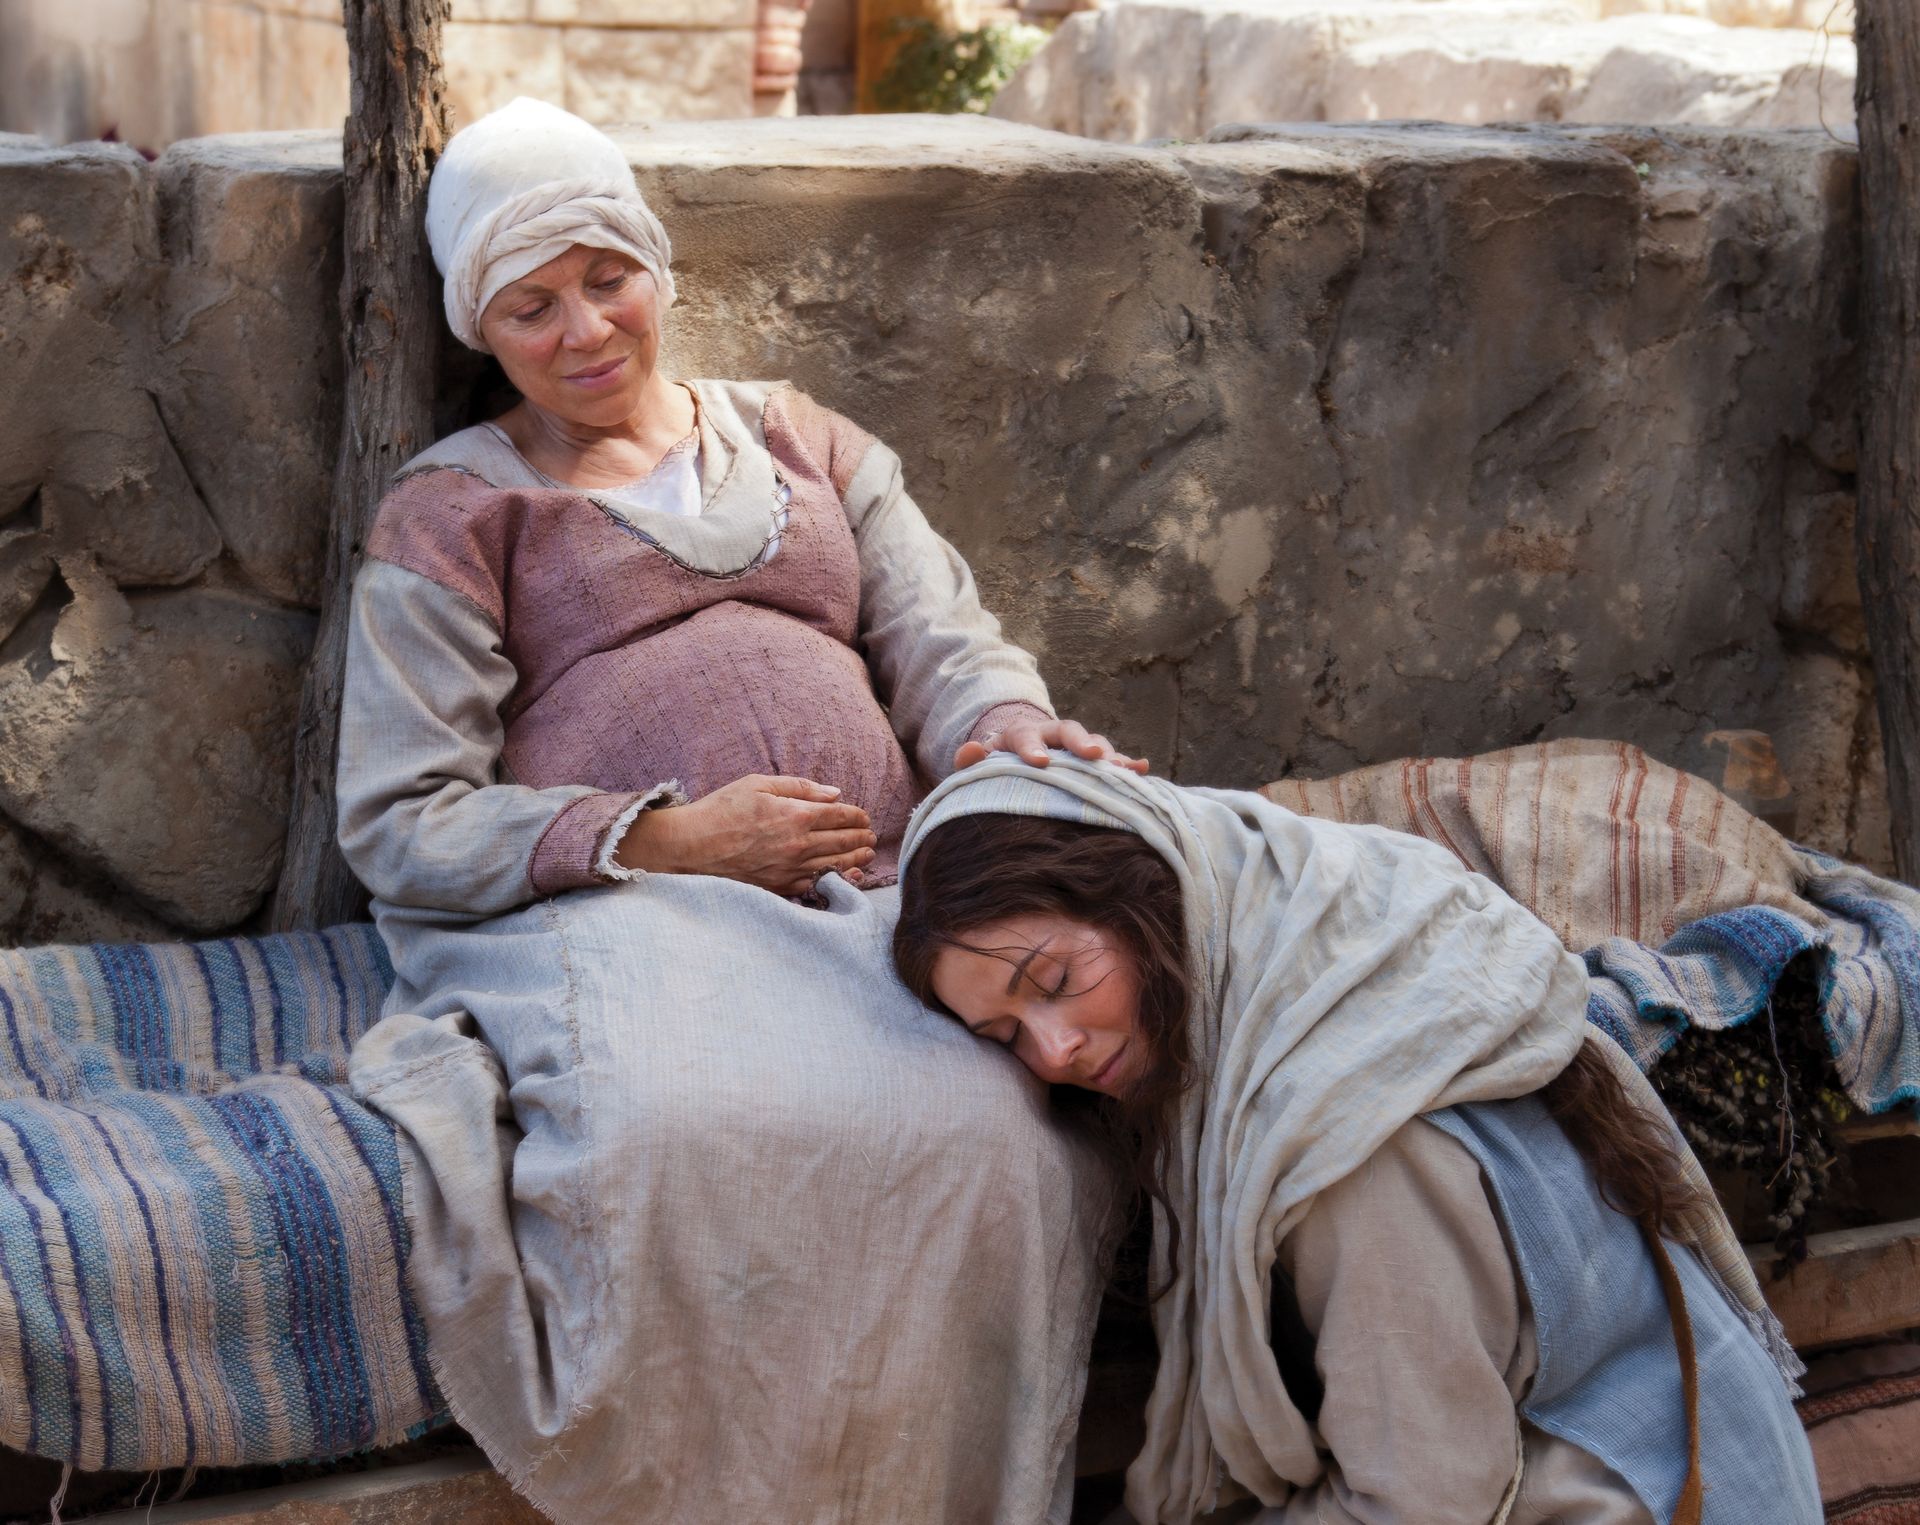 María visita a su prima Elisabet, quien también espera un bebé.